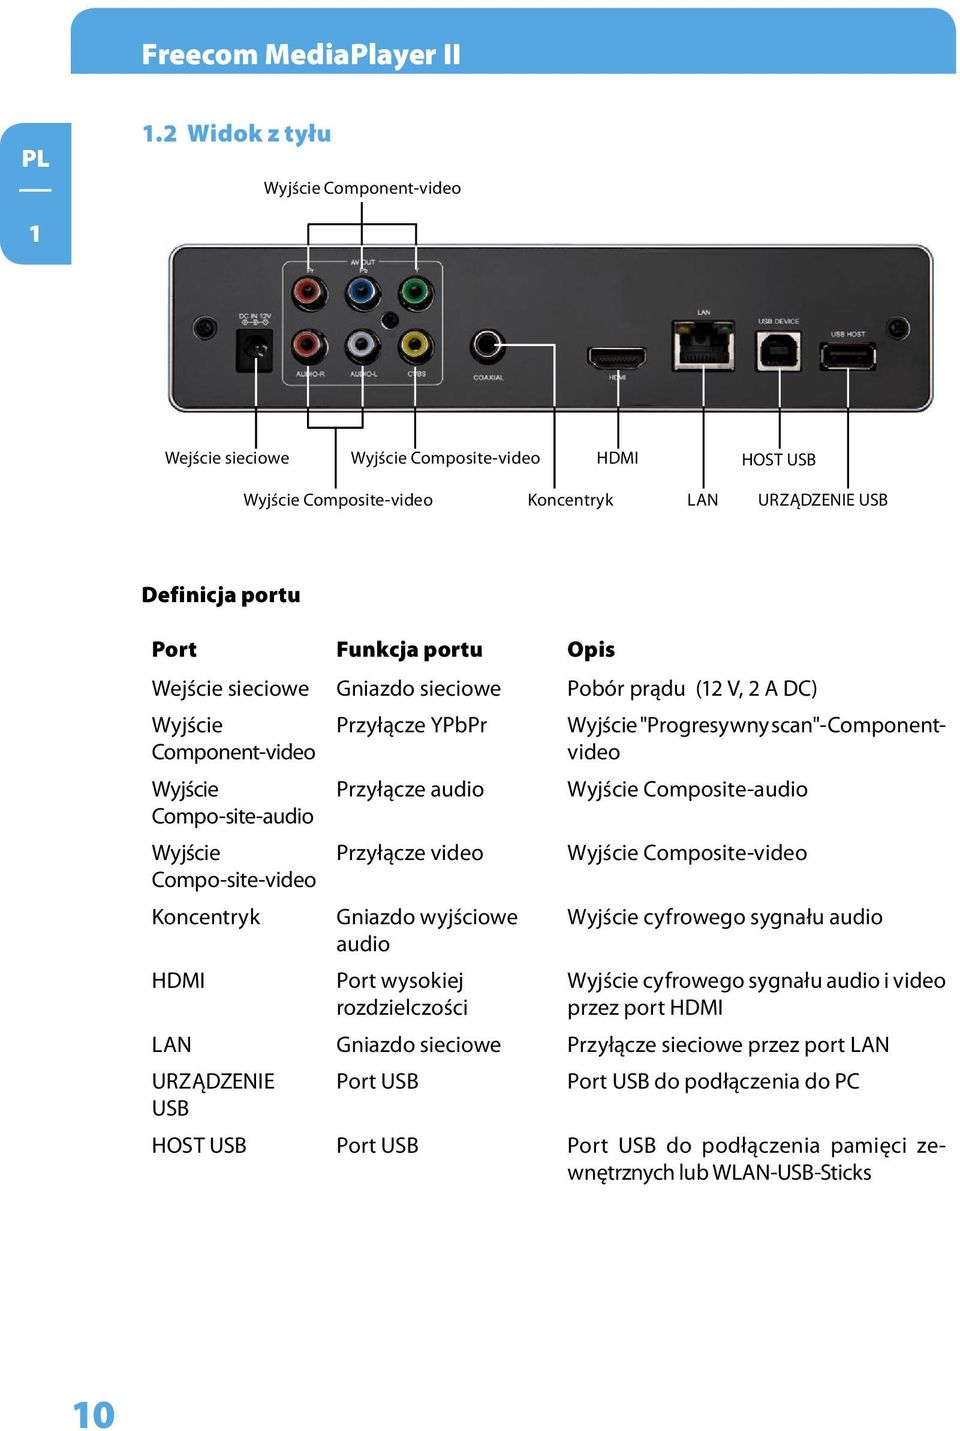 sieciowe Gniazdo sieciowe Pobór prądu (12 V, 2 A DC) Wyjście Component-video Przyłącze YPbPr Wyjście "Progresywny scan"-componentvideo Wyjście Przyłącze audio Wyjście Composite-audio Compo-site-audio